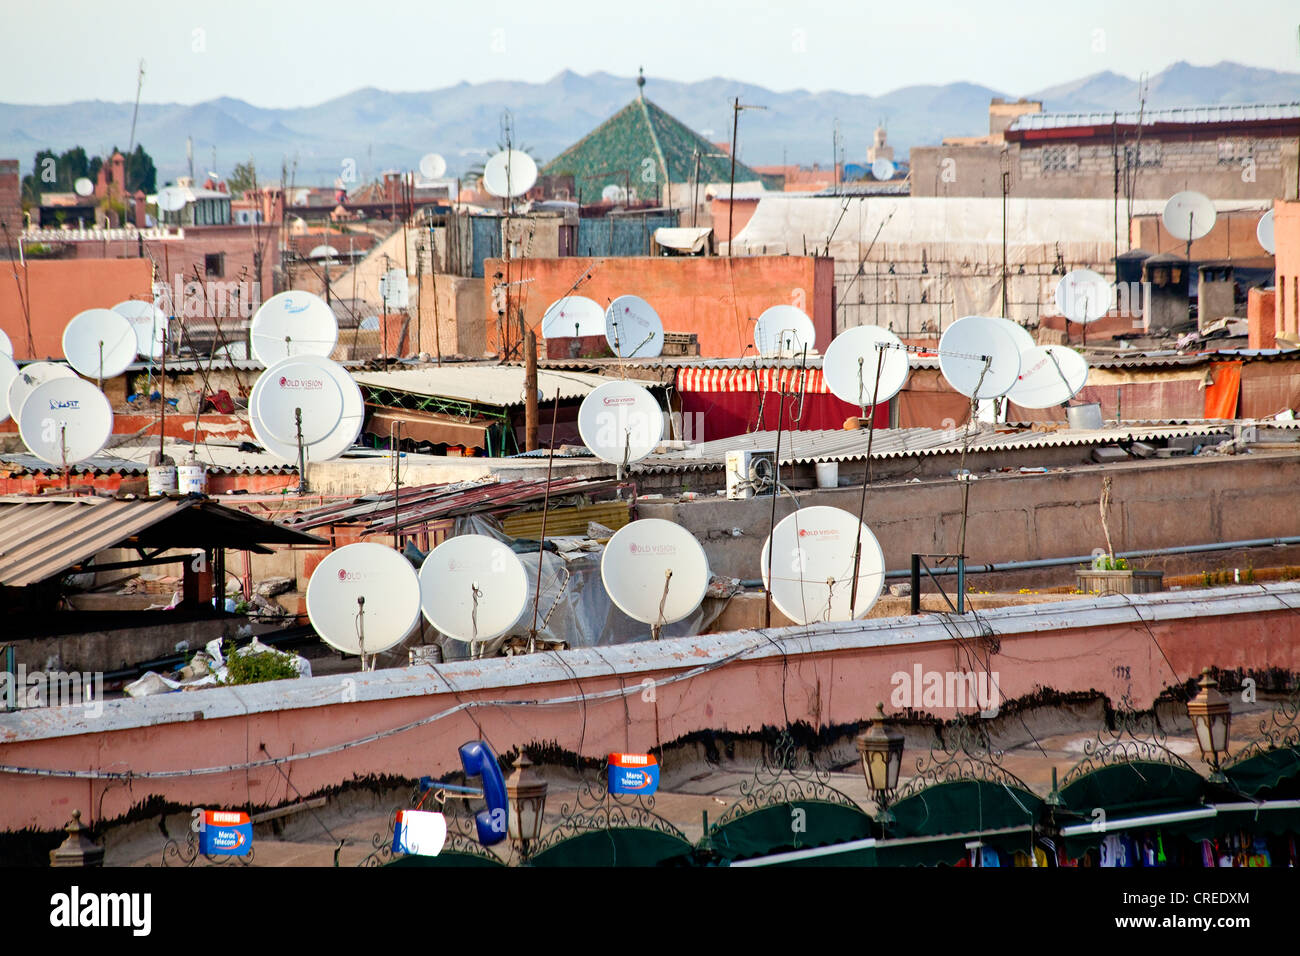 Antenas parabólicas y antenas en los techos de los edificios de la medina o ciudad vieja de Marrakech, Marruecos Foto de stock